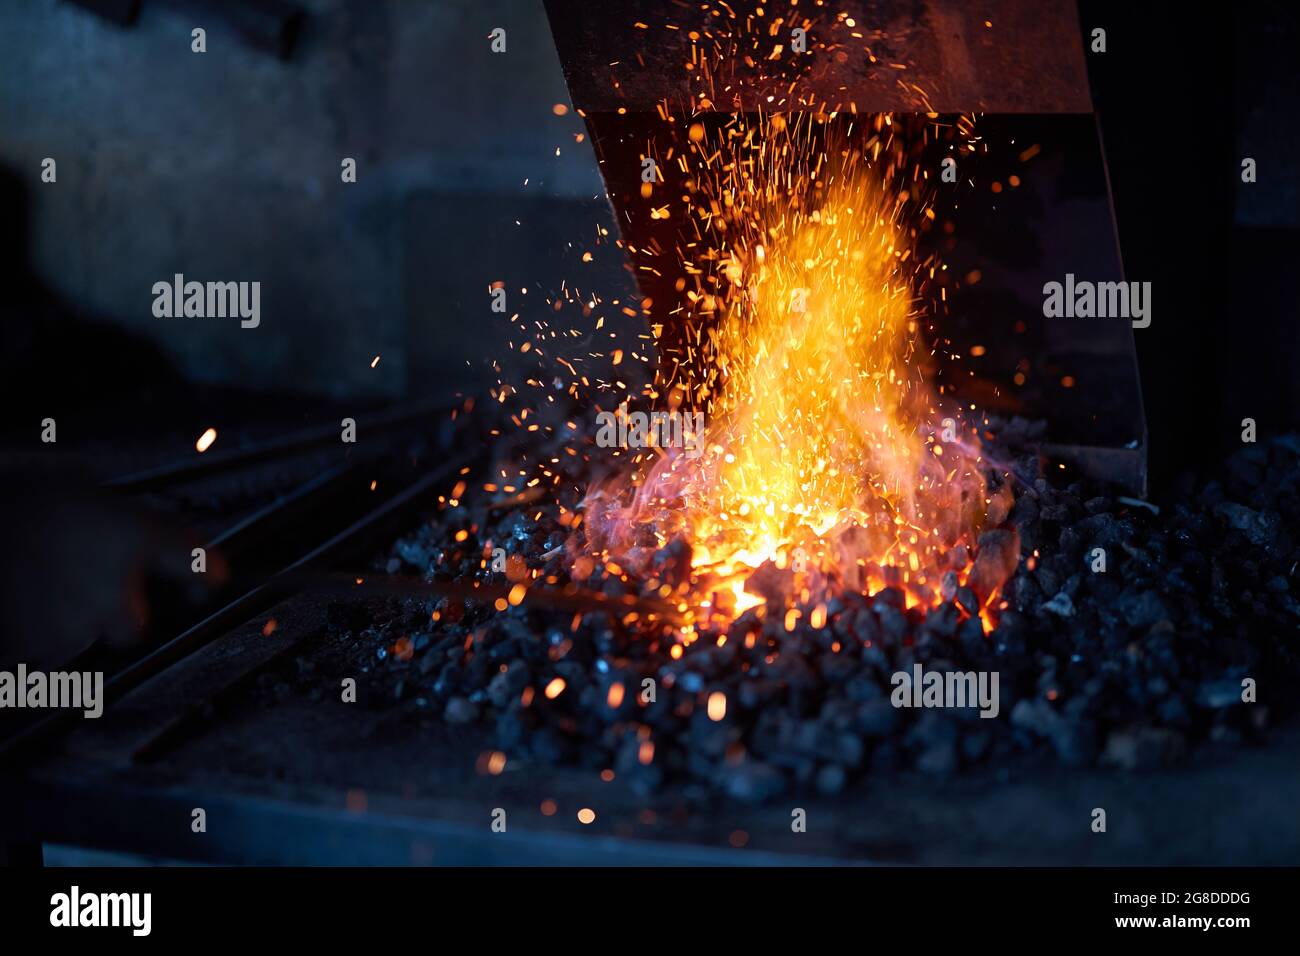 Heißes Rotmetall bei brennendem Feuer zur Vorbereitung auf den Schmiedeprozess in der Werkstatt. Funken fliegen umher. Traditionelle Schmiedekunst. Stockfoto